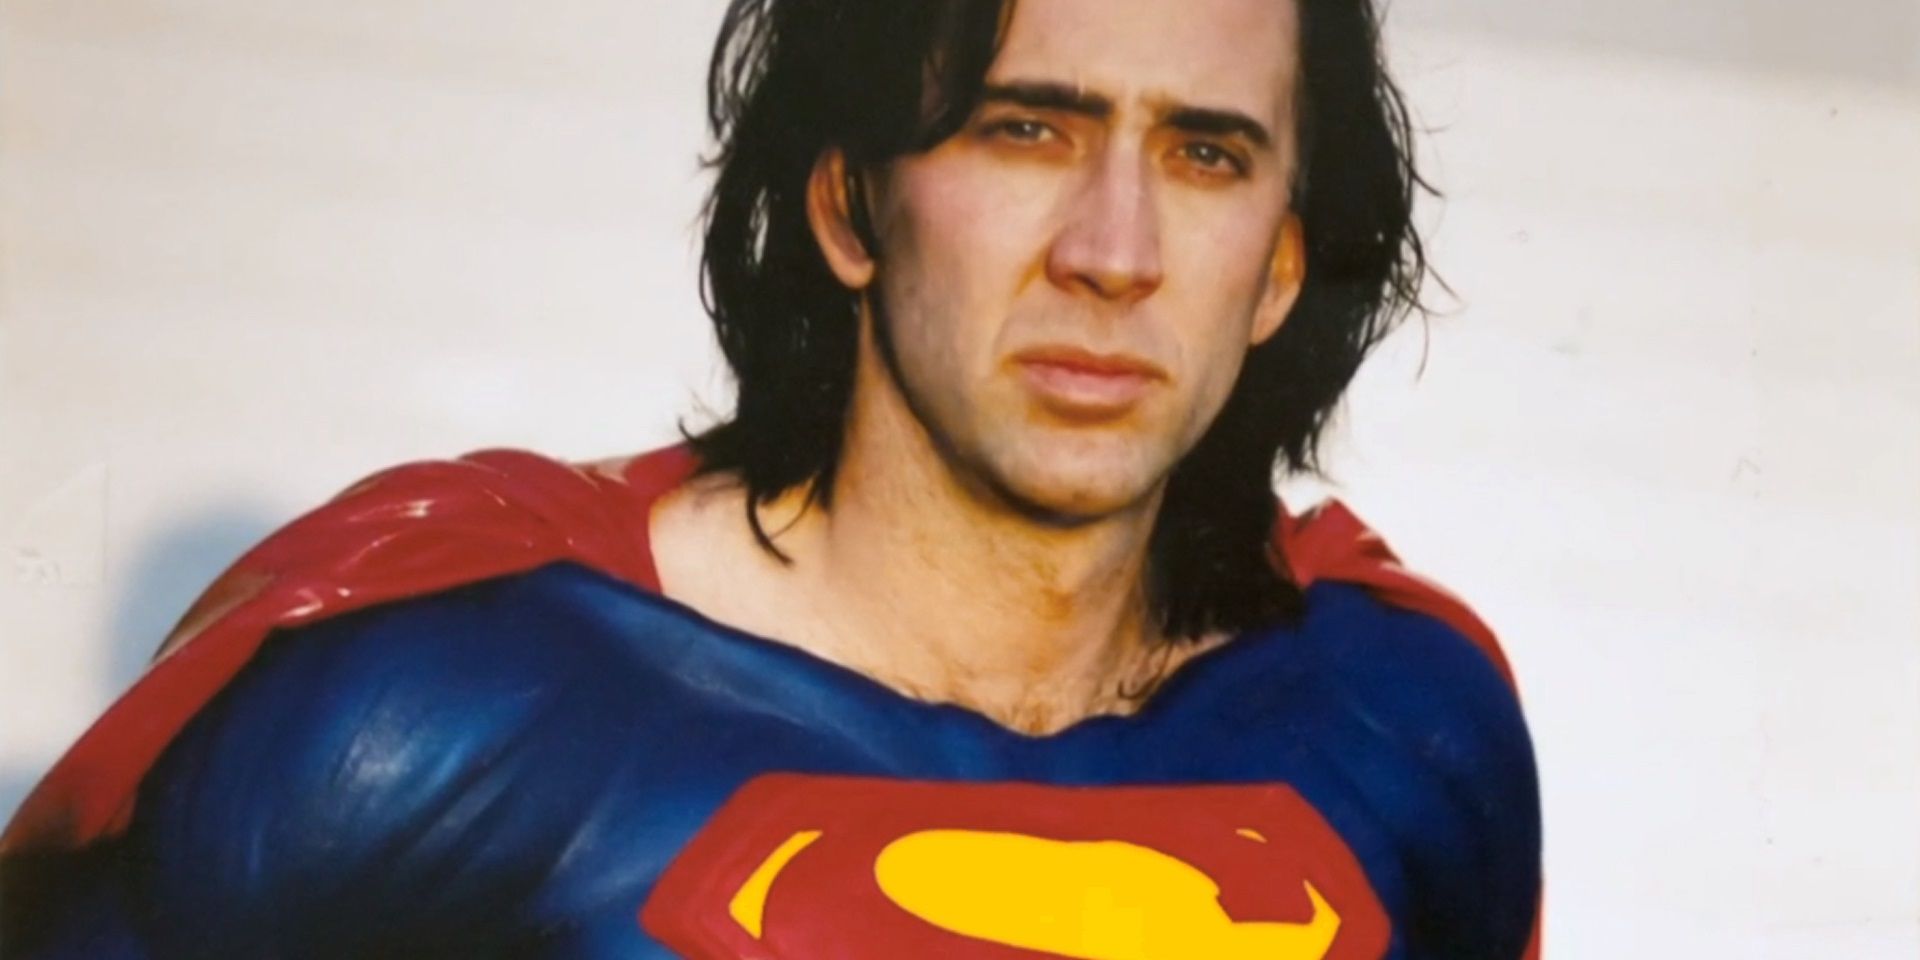 Nicolas Cages Superman costume test